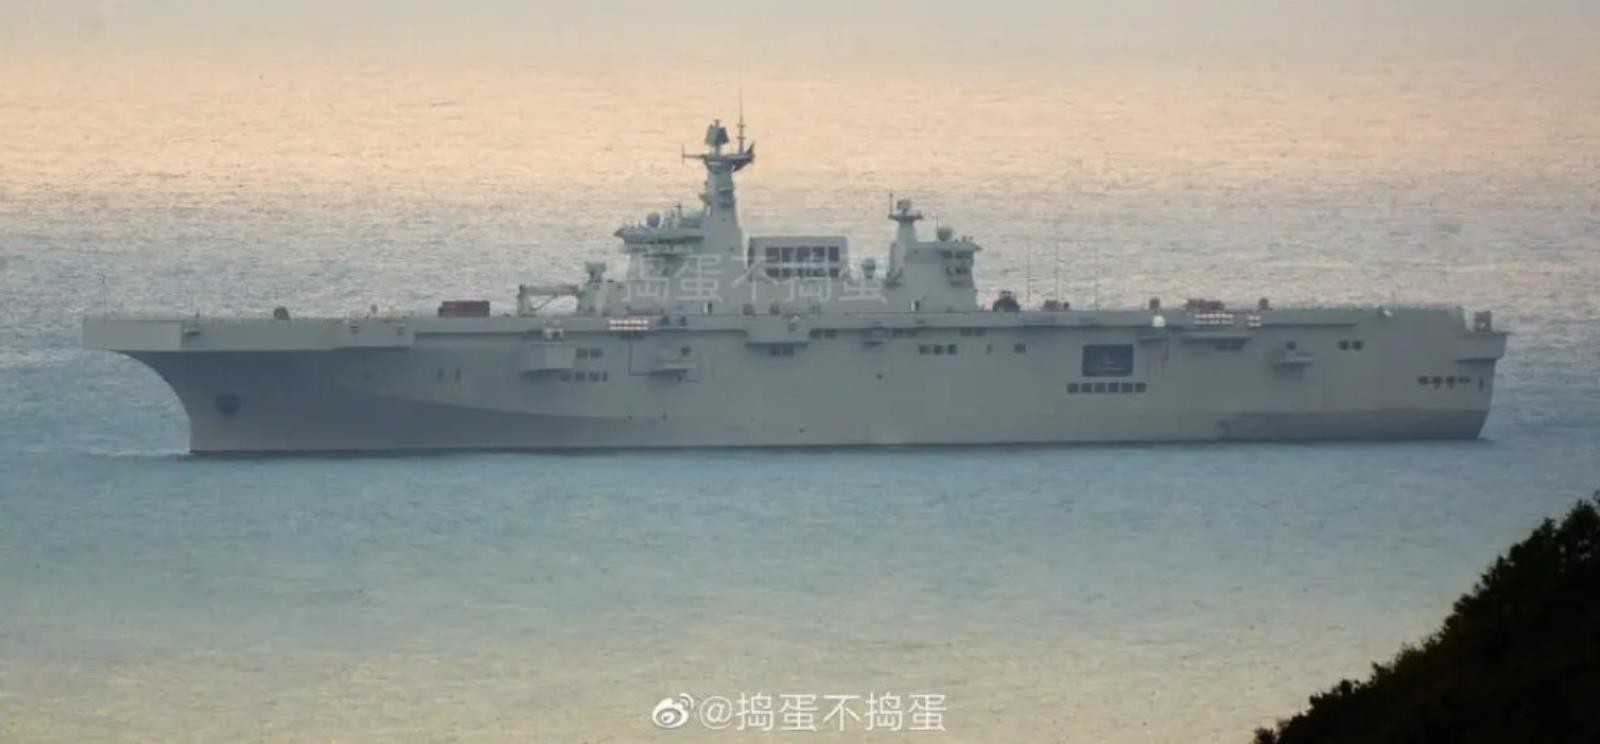 Trzeci chiński okręt desantowy Typ 75 LHD, chiński okręt desantowy Typ 75 LHD, chiński okręt desantowy,Typ 75 LHD